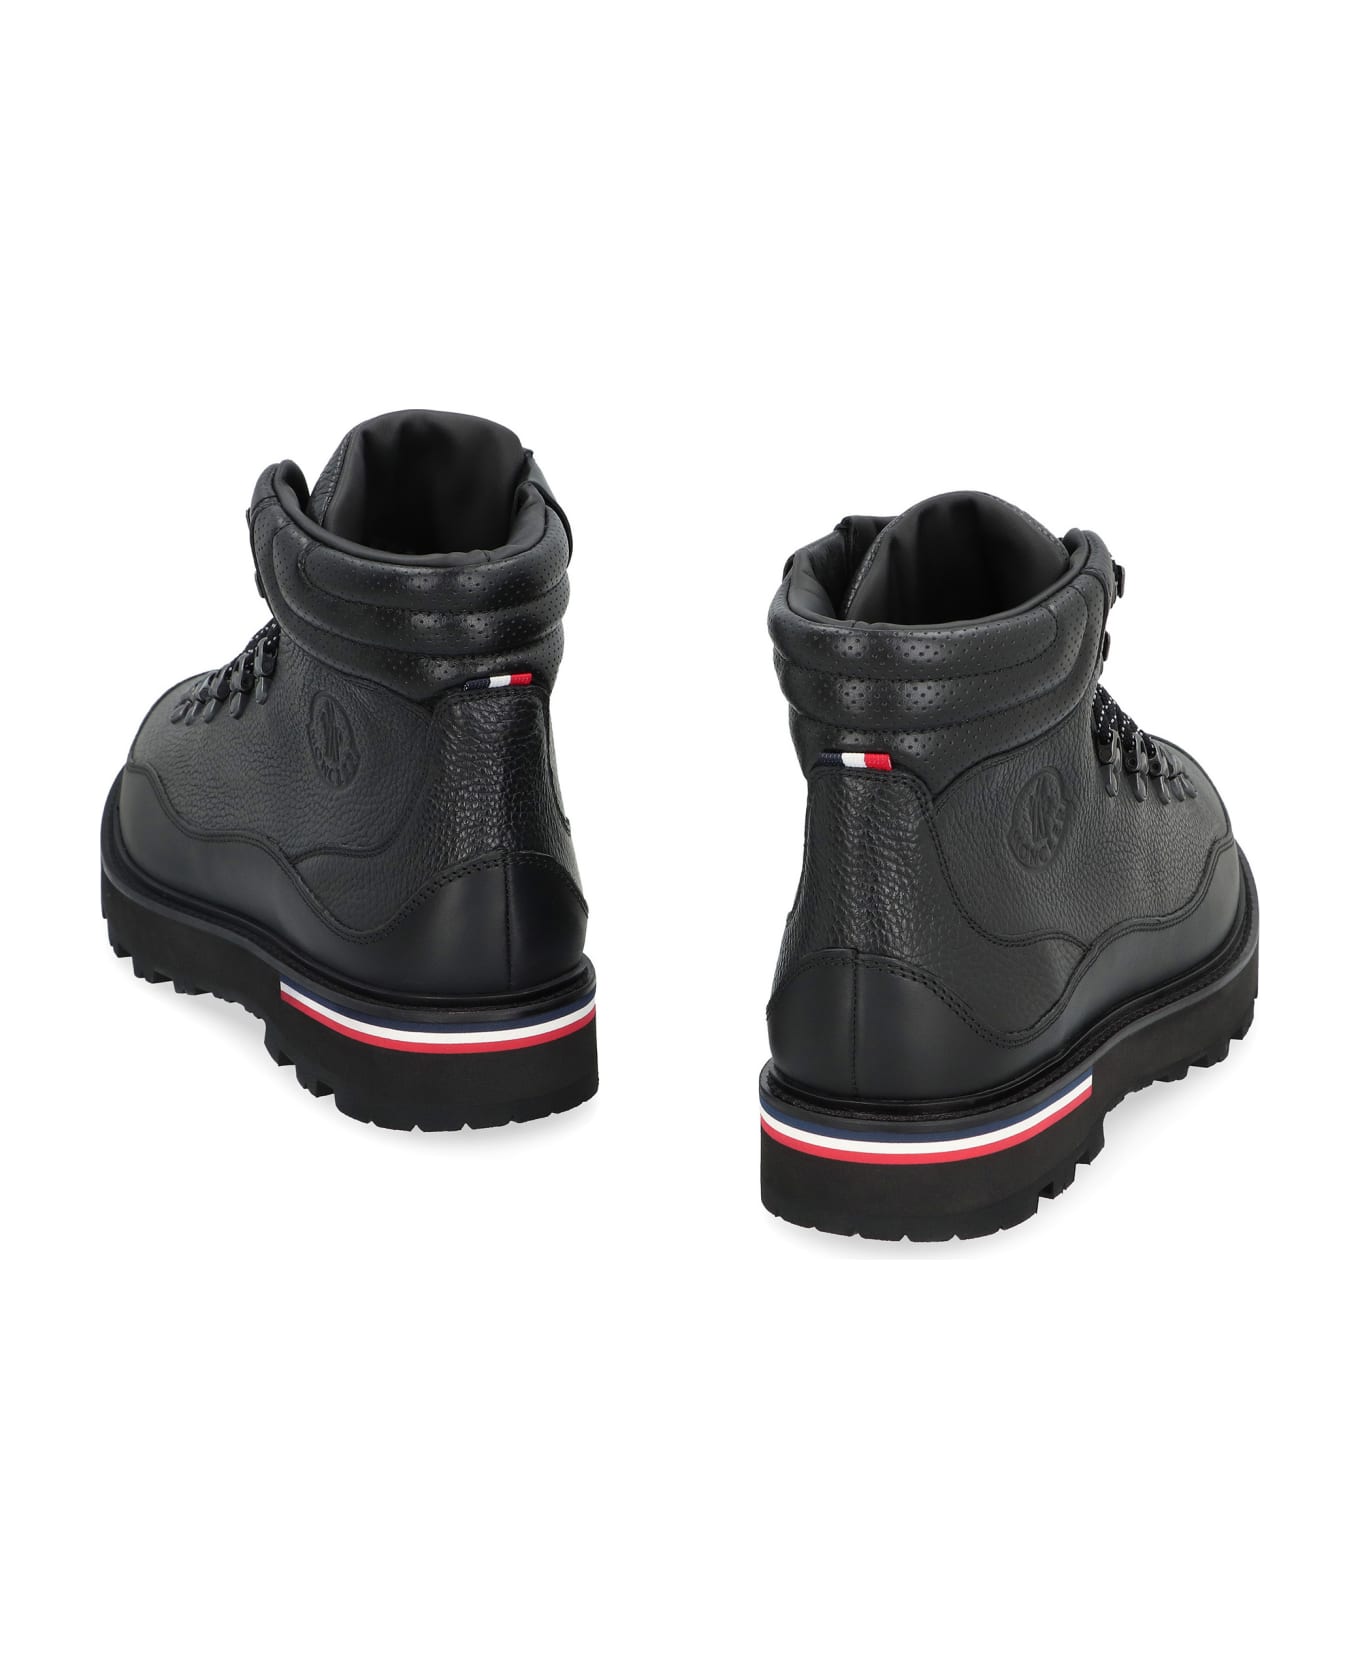 Moncler Paka Hiking Boots - black